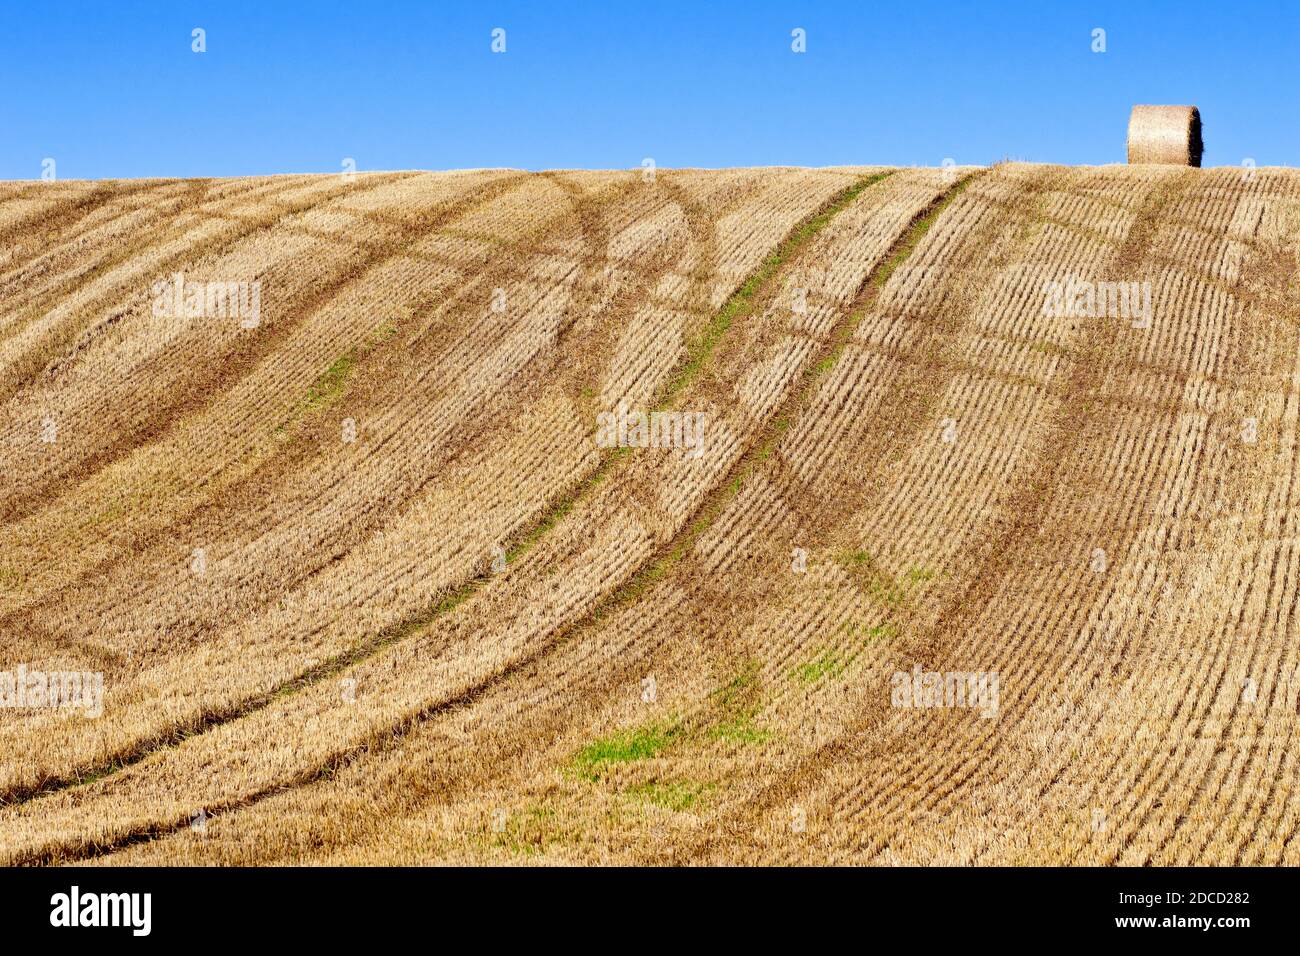 Ein geerntetes Feld, die Spuren von landwirtschaftlichen Fahrzeugen sichtbar in den Stoppeln und mit einem einzigen Ballen Stroh links sitzen auf dem Kamm des Hügels. Stockfoto